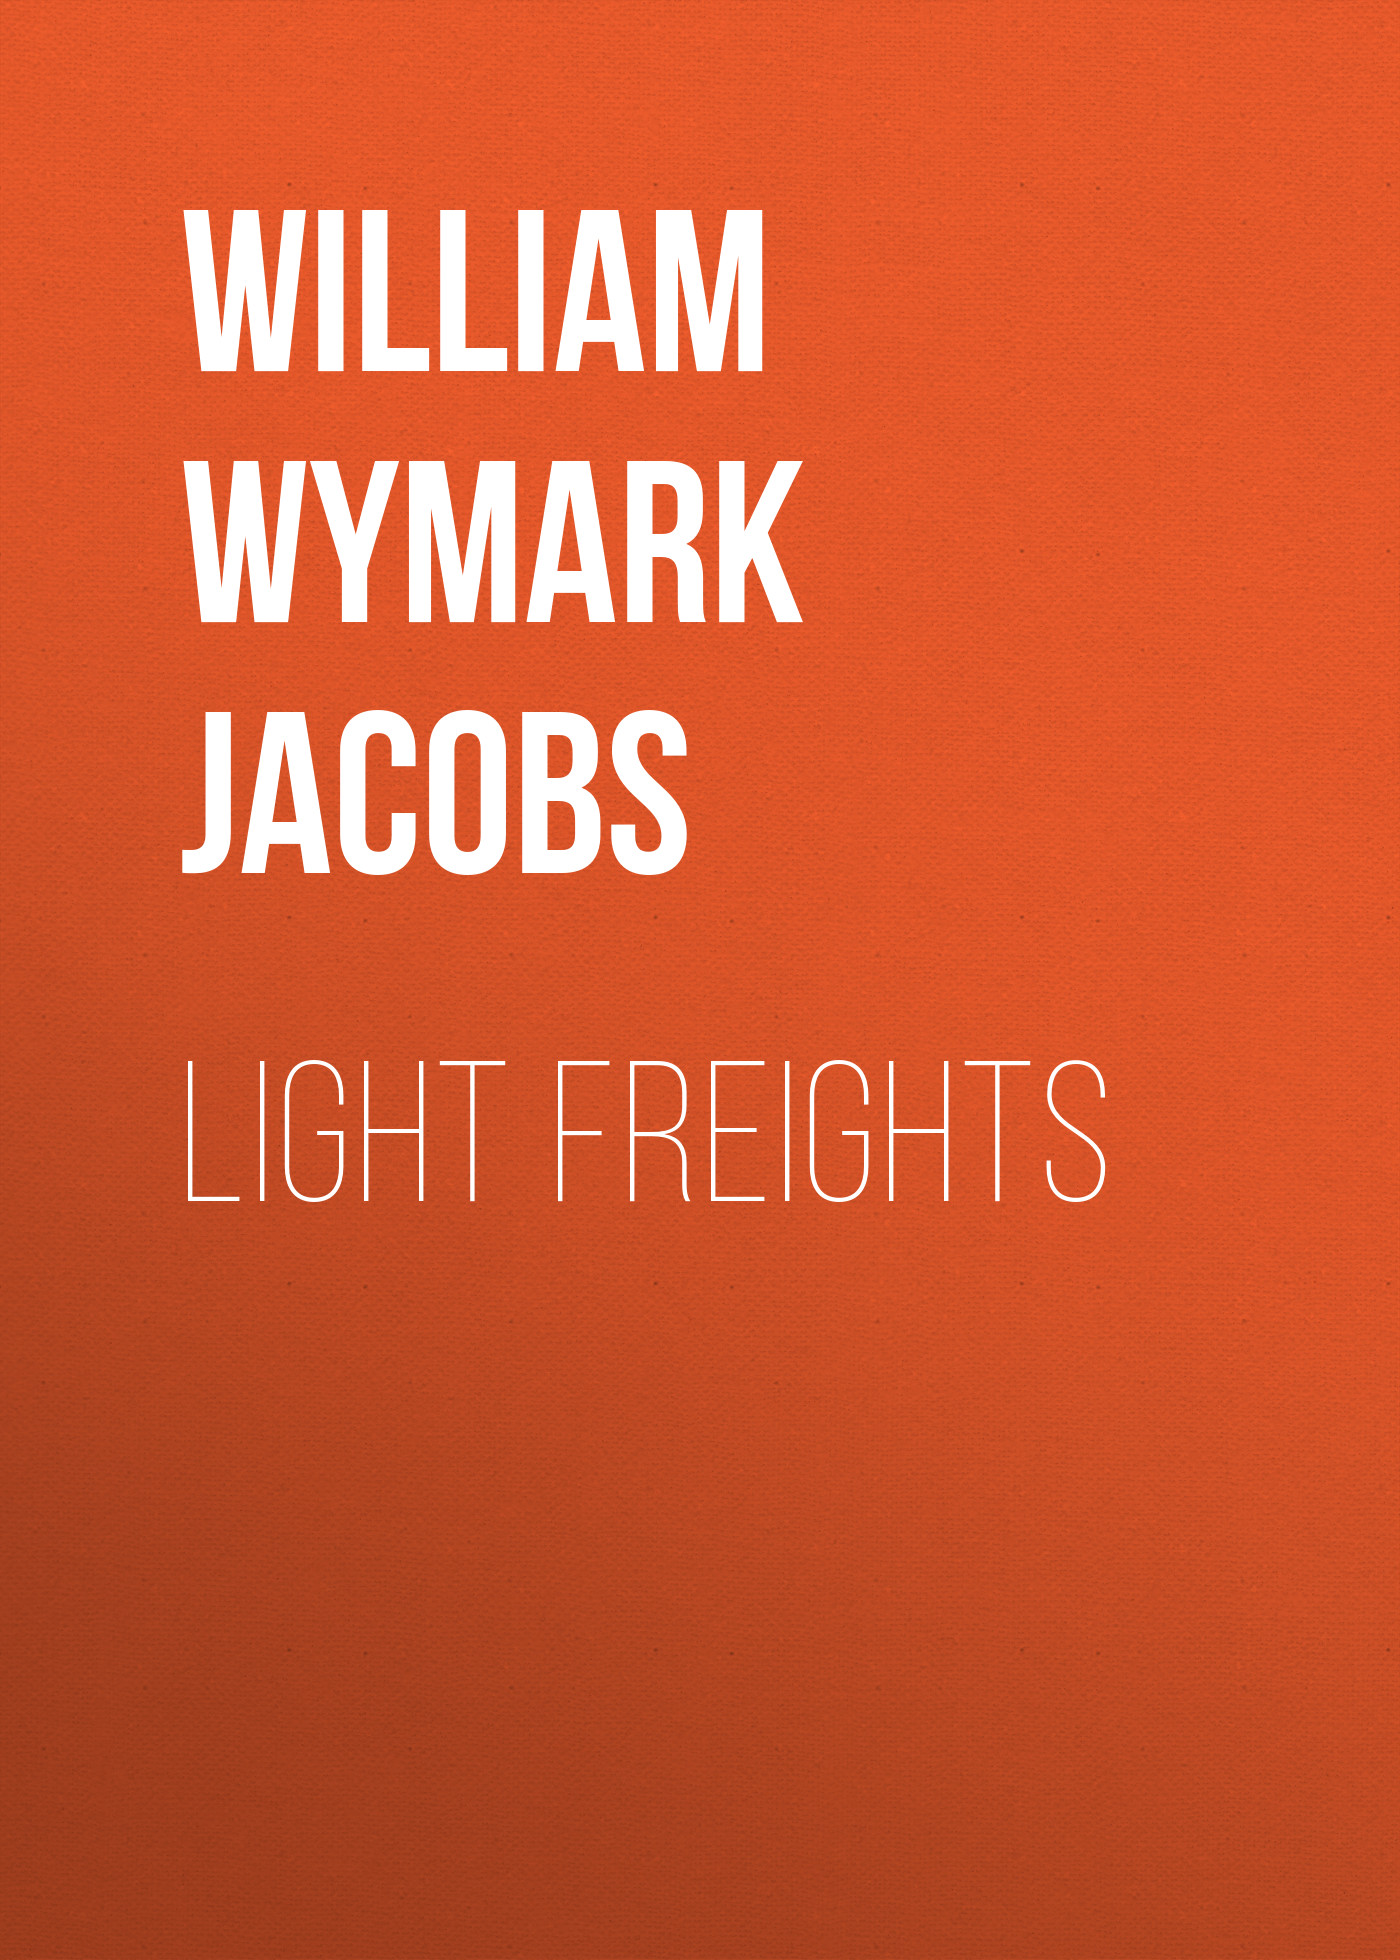 Книга Light Freights из серии , созданная William Wymark Jacobs, может относится к жанру Зарубежная классика, Зарубежная старинная литература. Стоимость электронной книги Light Freights с идентификатором 34842198 составляет 0 руб.